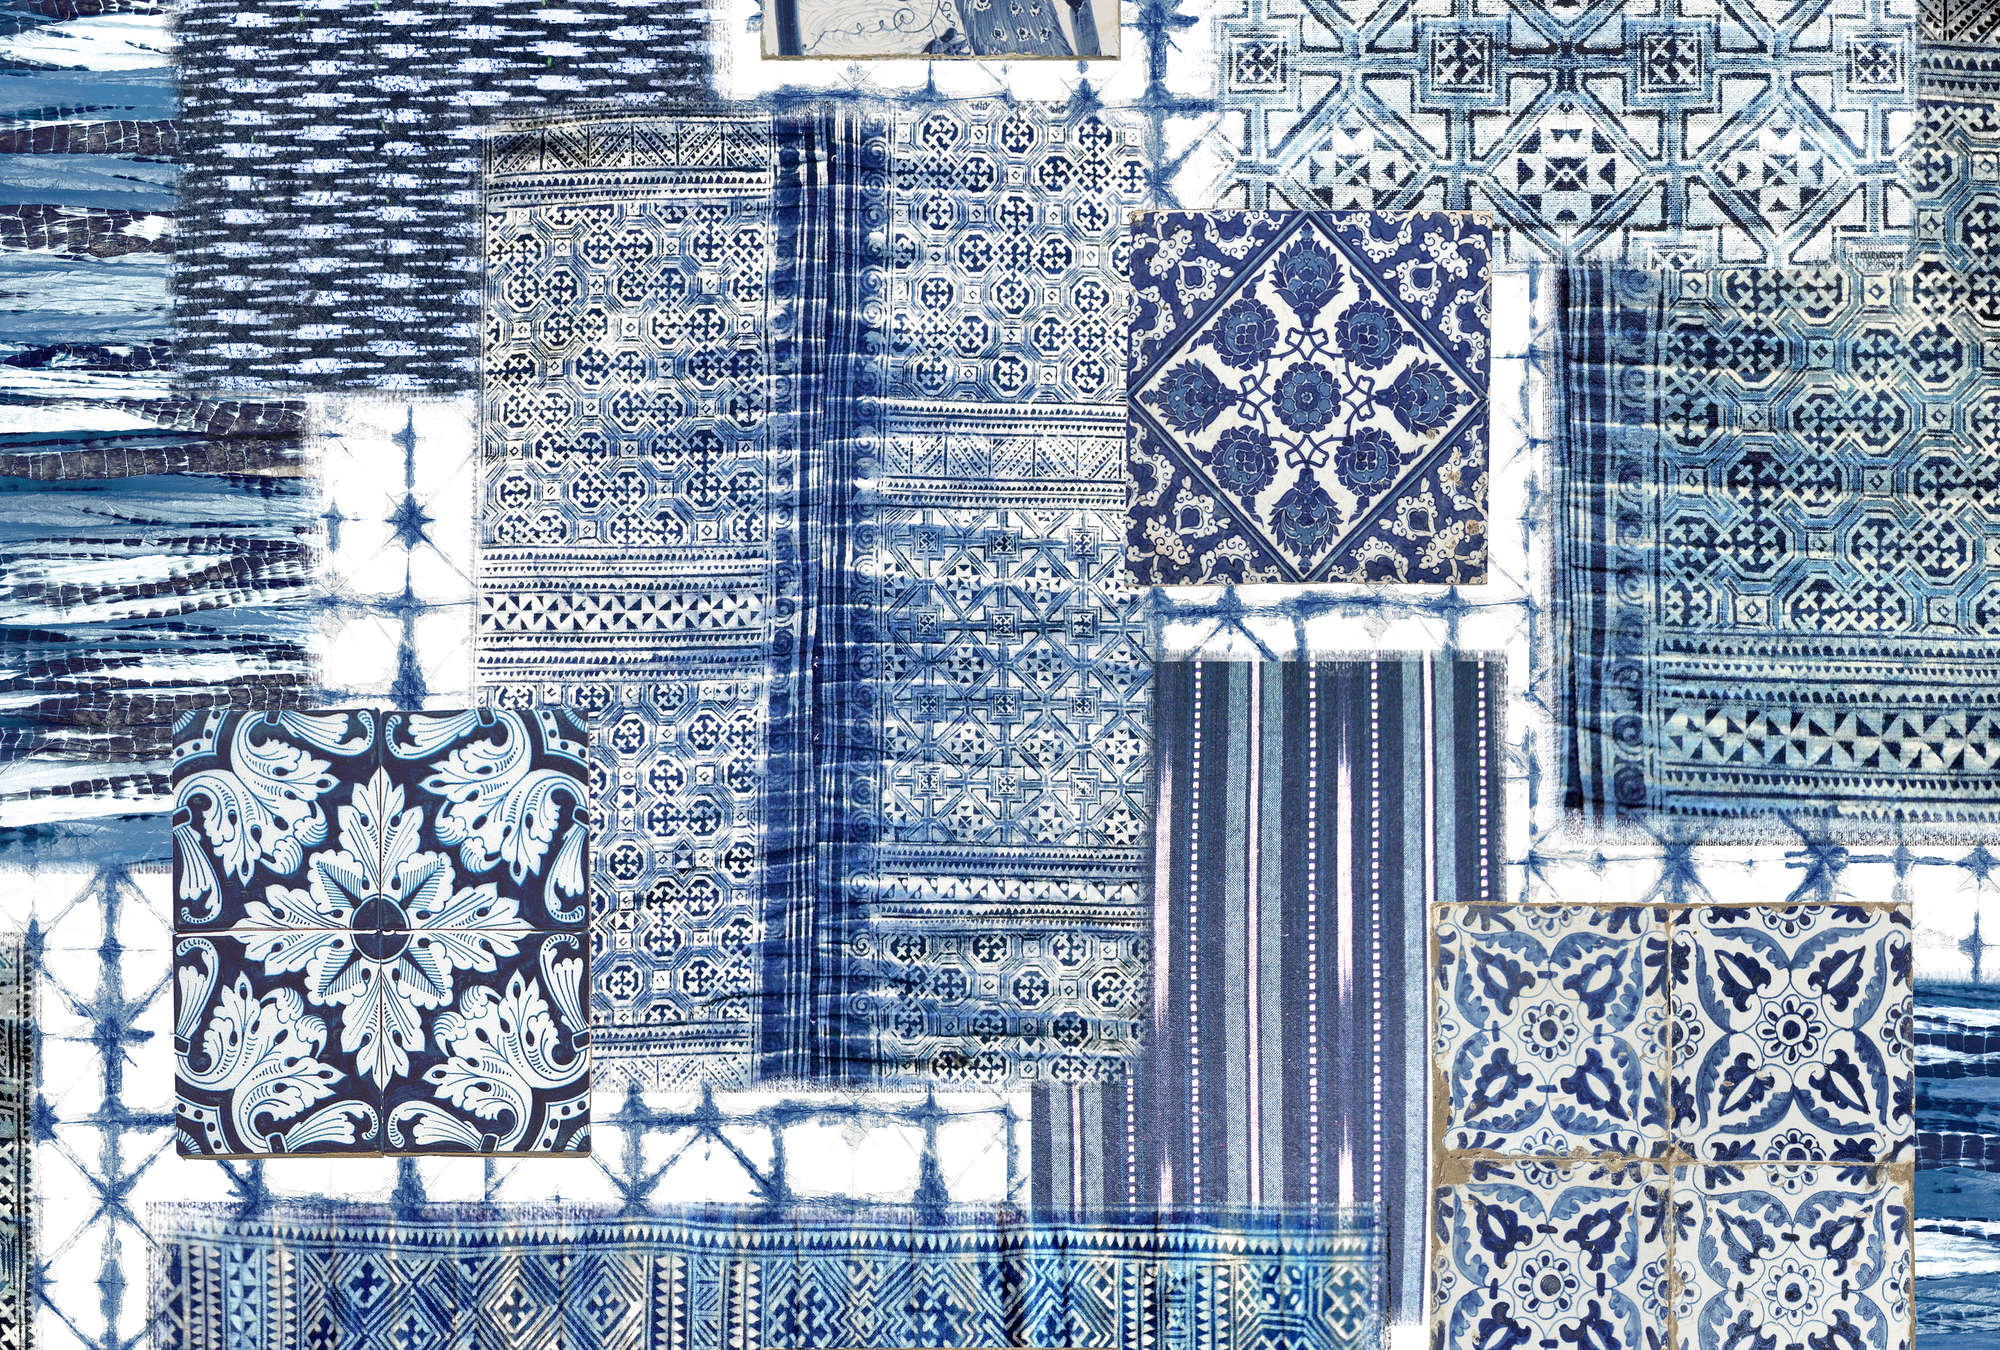             Papel pintado de patchwork, baldosas de Delft y estampado - Azul, Blanco
        